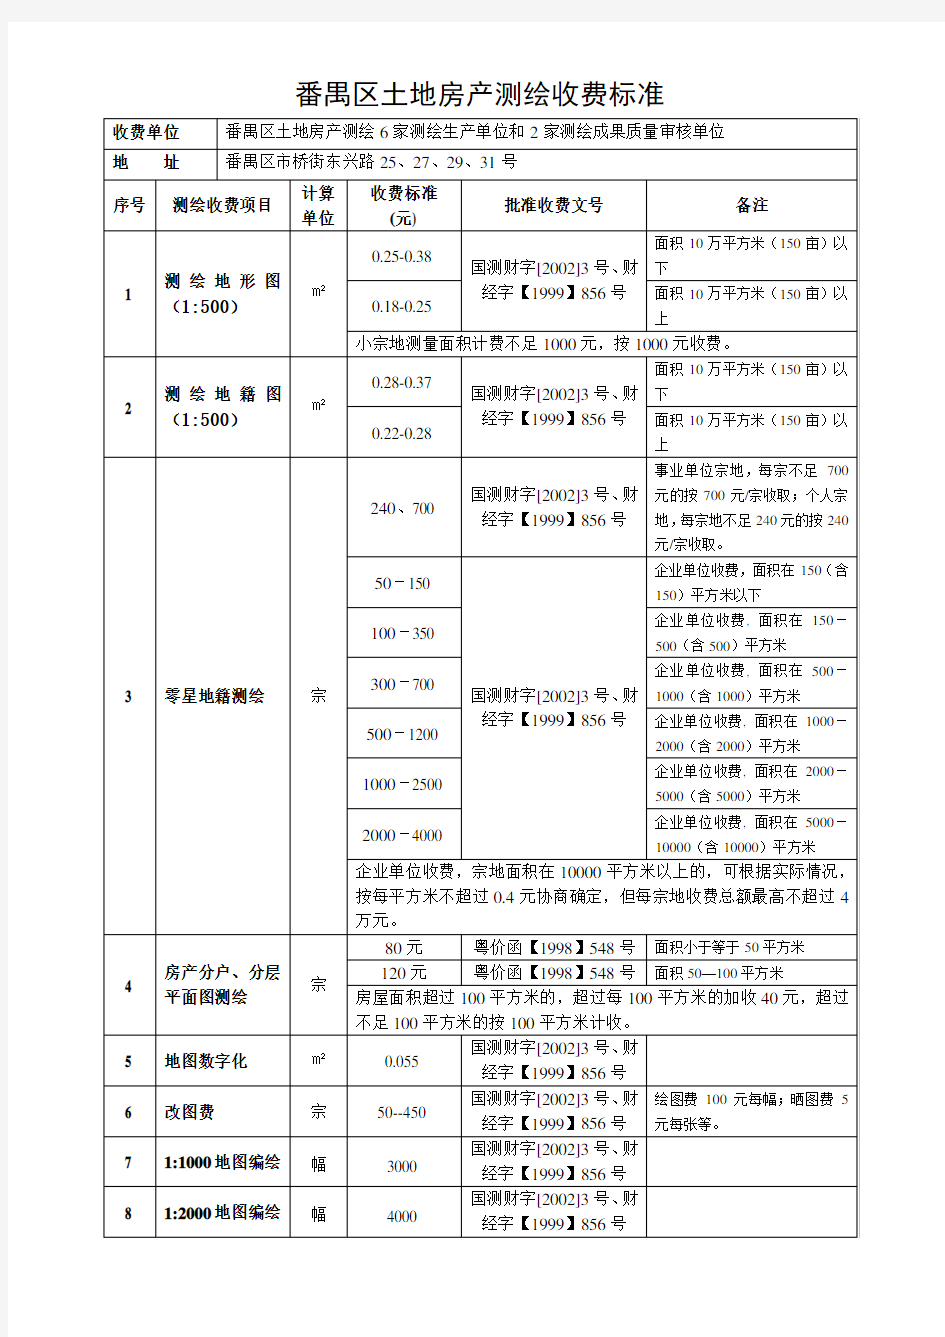 广州市番禺区土地房产测绘收费标准(以此为准)